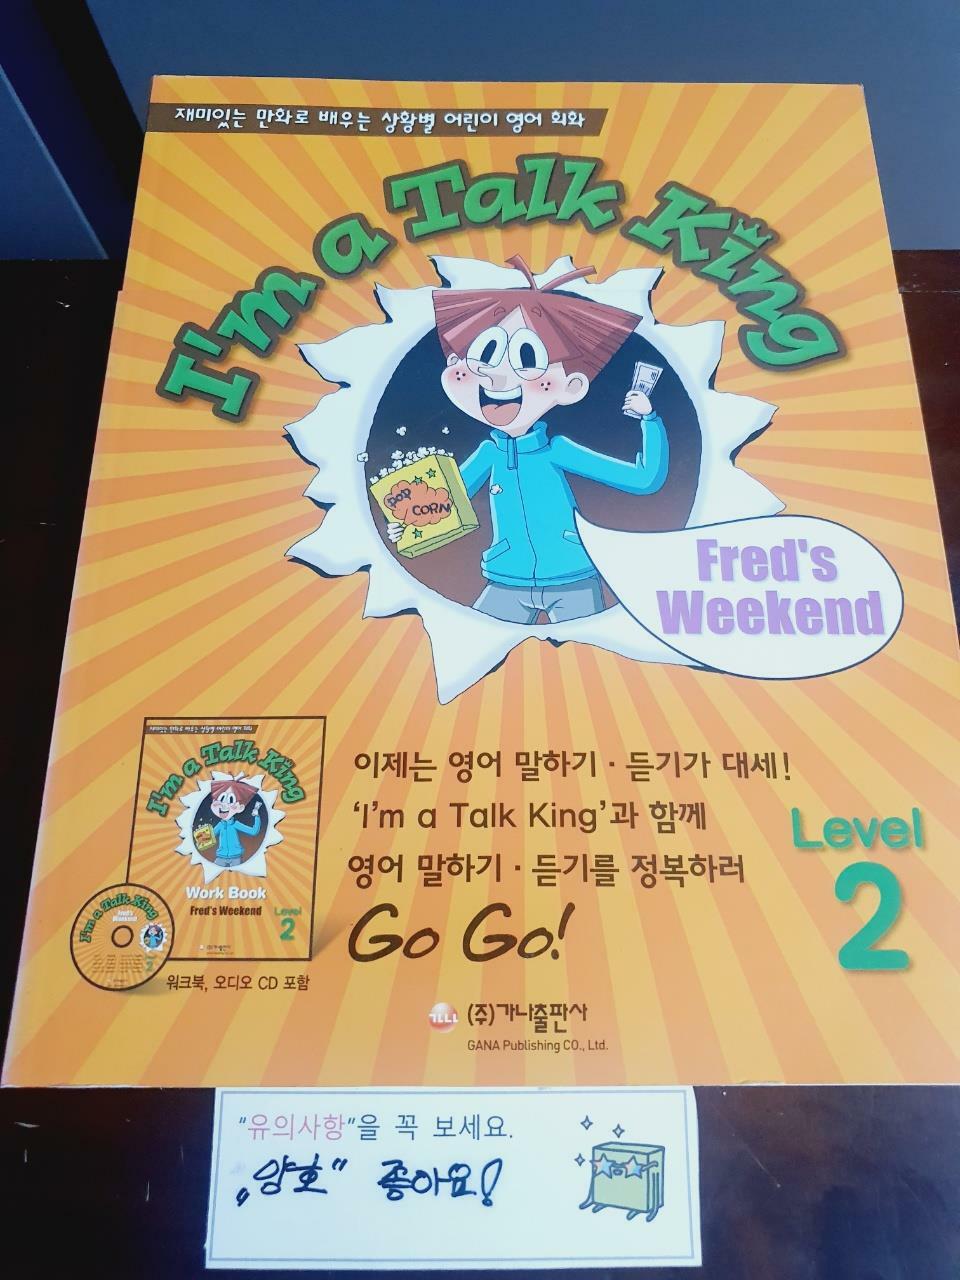 [중고] I‘m a Talk King Level 2 : Fred‘s Weekend (본책 + 워크북 + CD 1장)